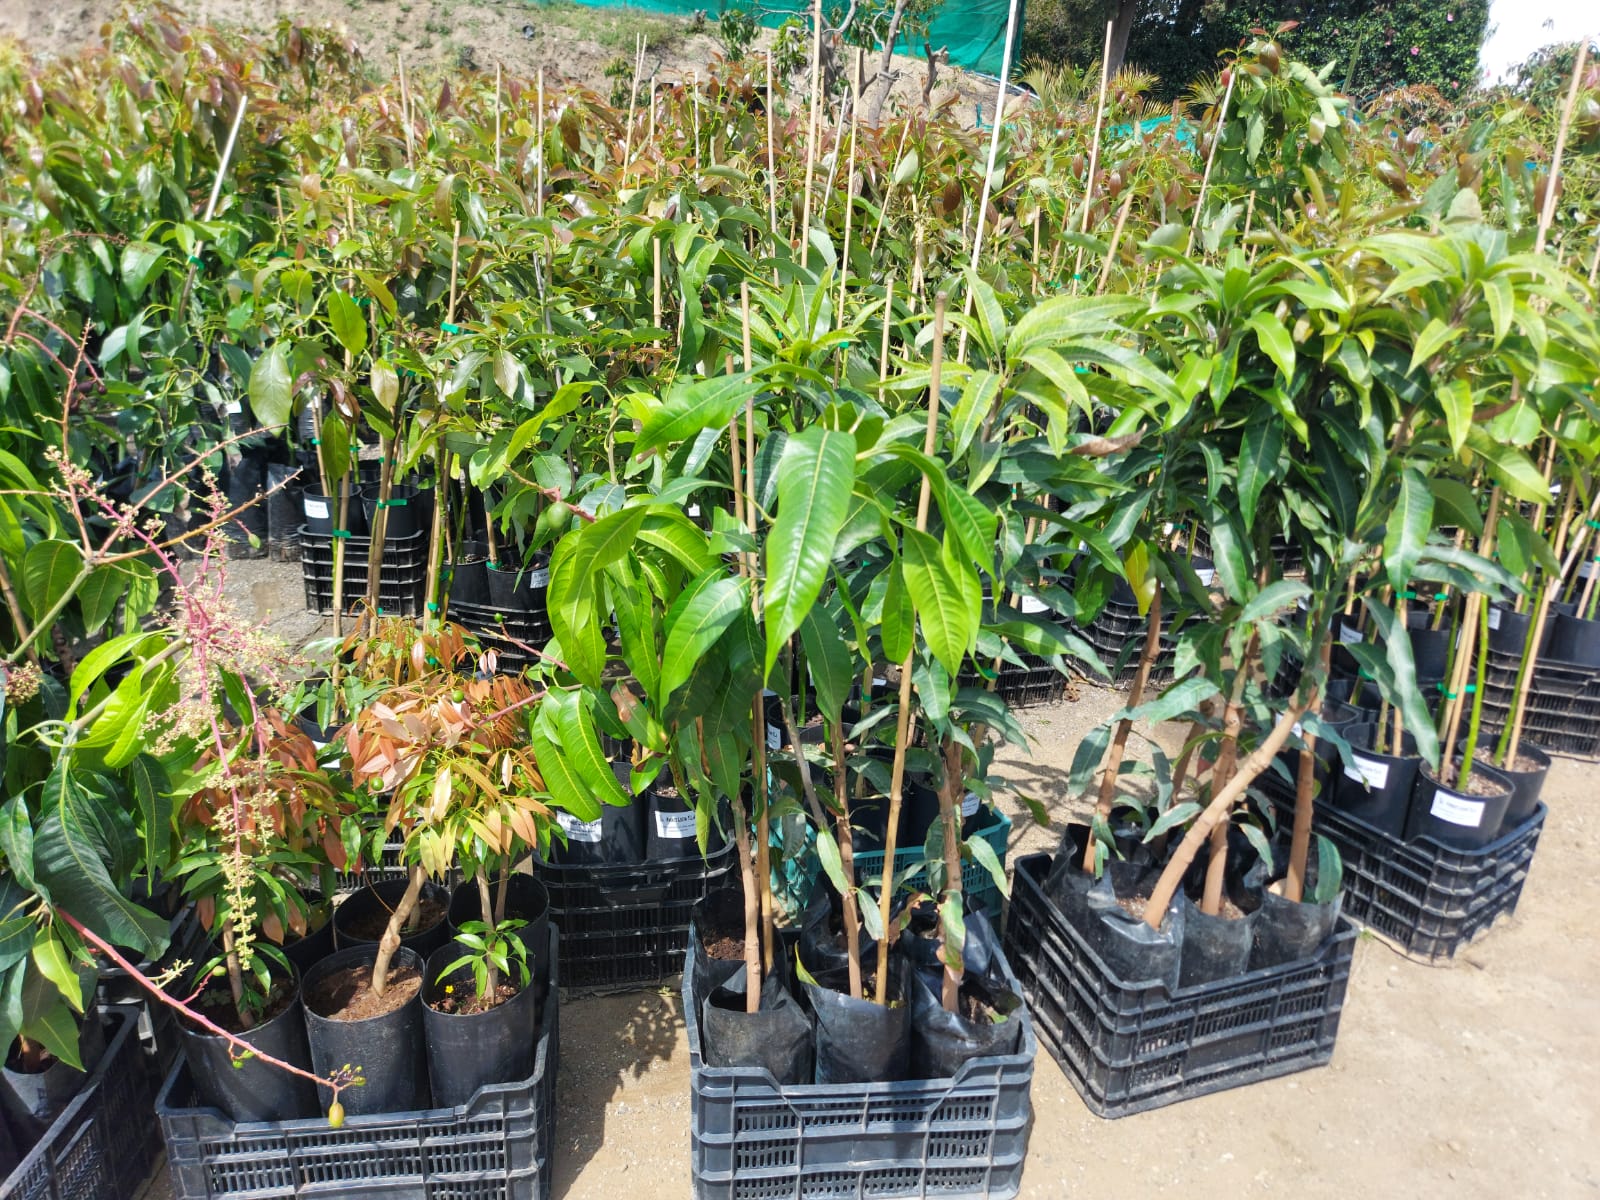 Φυτώριο-Καλλιέργεια Παραγωγή Αβοκαντο - Μάγκο φυτά εισαγωγής με πολλαπλασιαστικό υλικό από Ισπανία